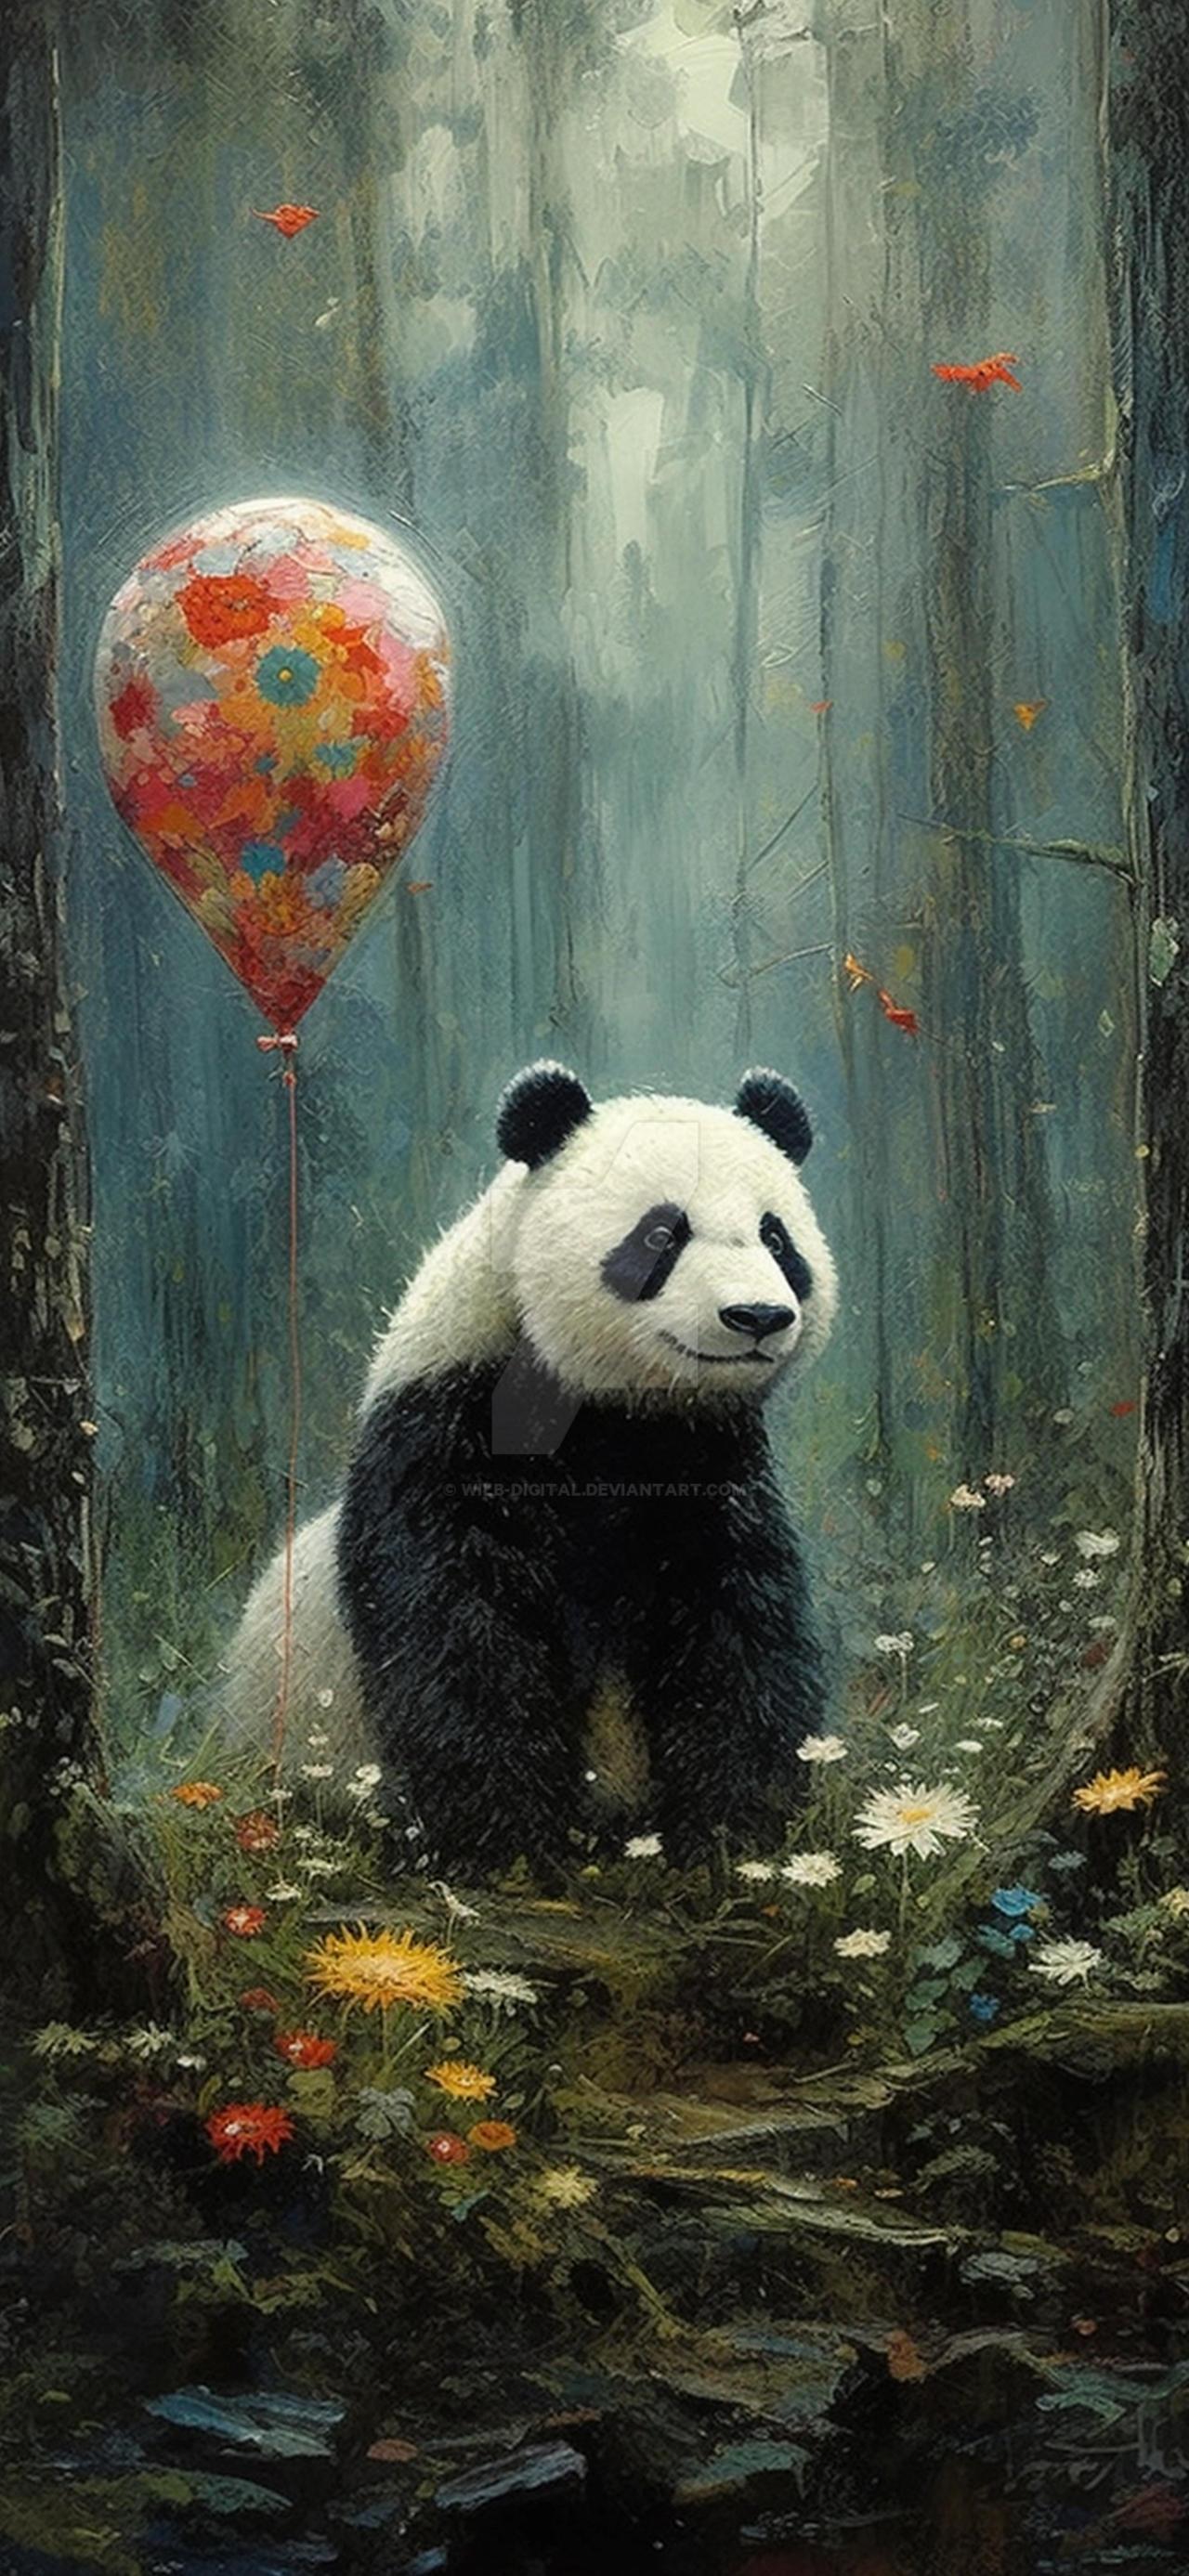 Panda Art Mobile Wallpaper By Wilb Digital